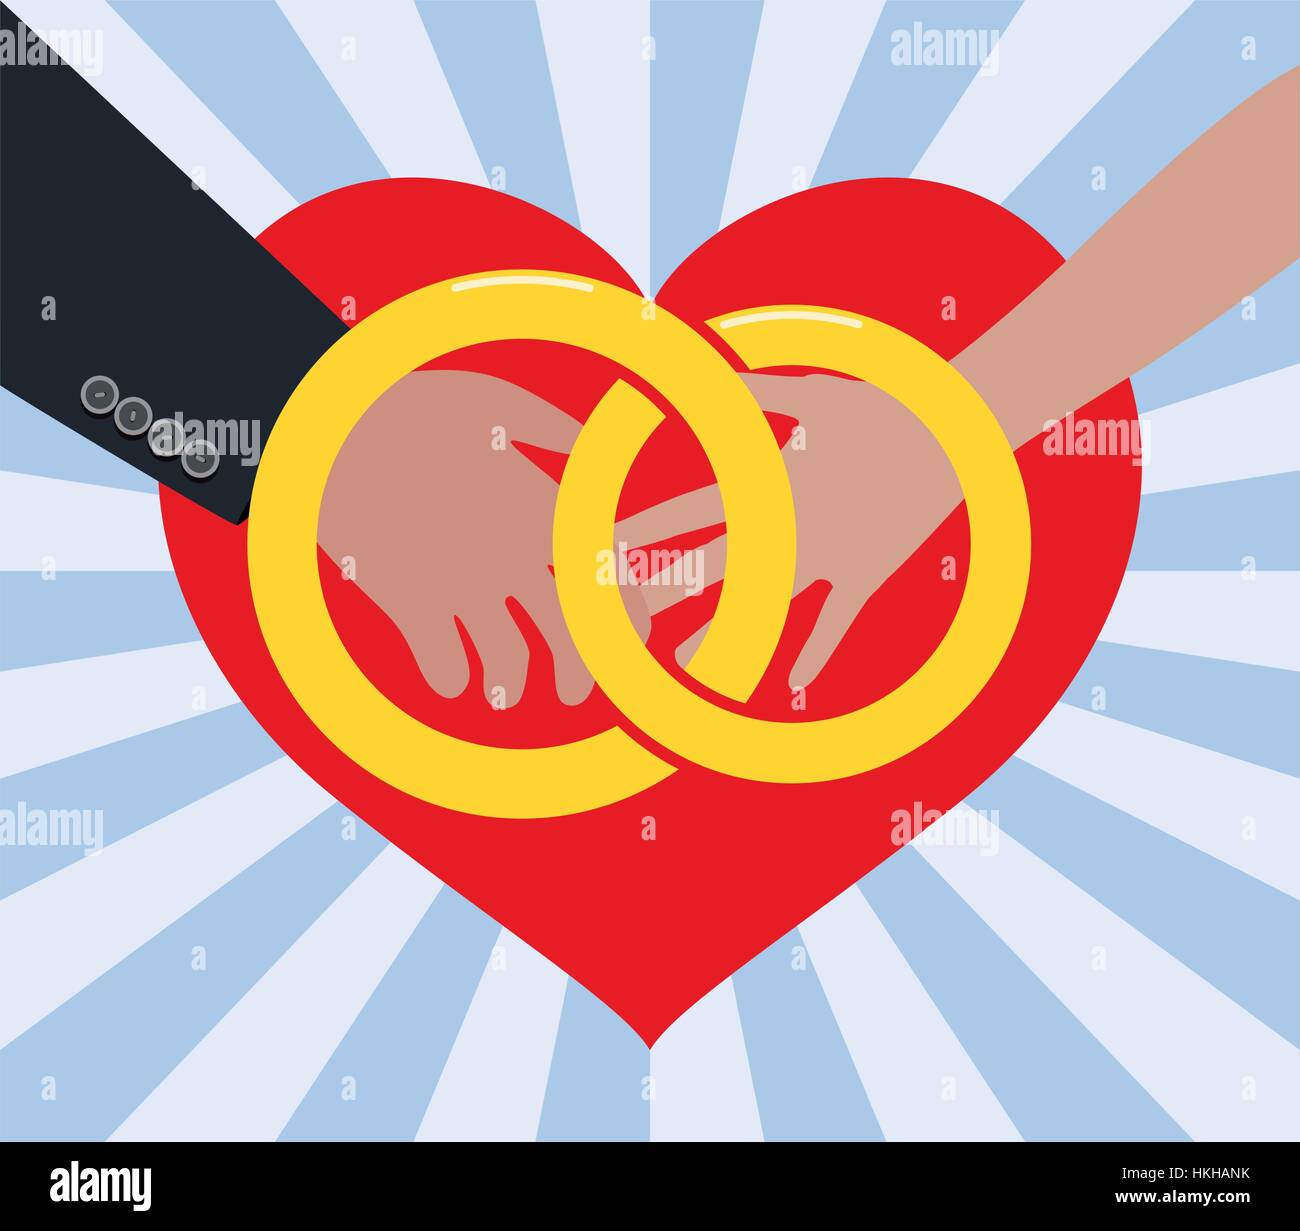 Vektor-Illustration der Ehe von Mann und Frau in der Liebe, mit goldenen Ringen und roten Herzen Stock Vektor